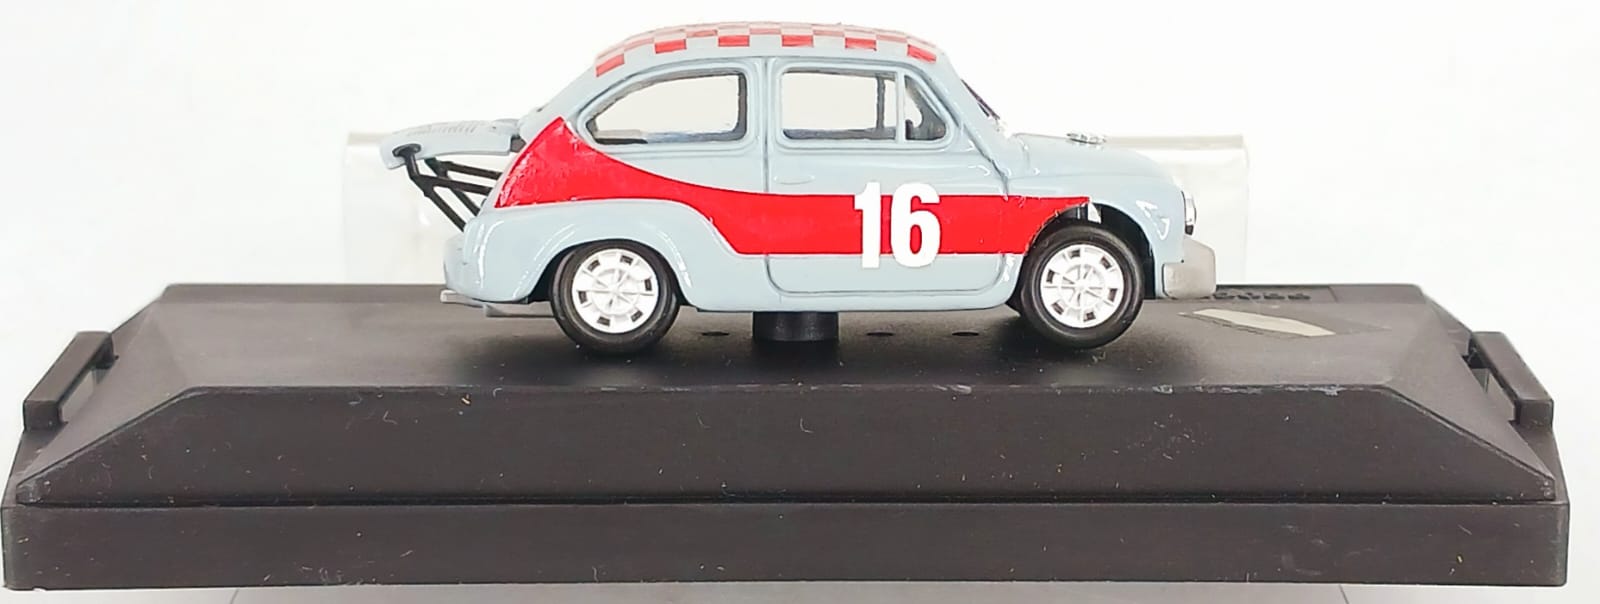 Fiat Abarth 1000 Gr 5  4 ore monza 1968